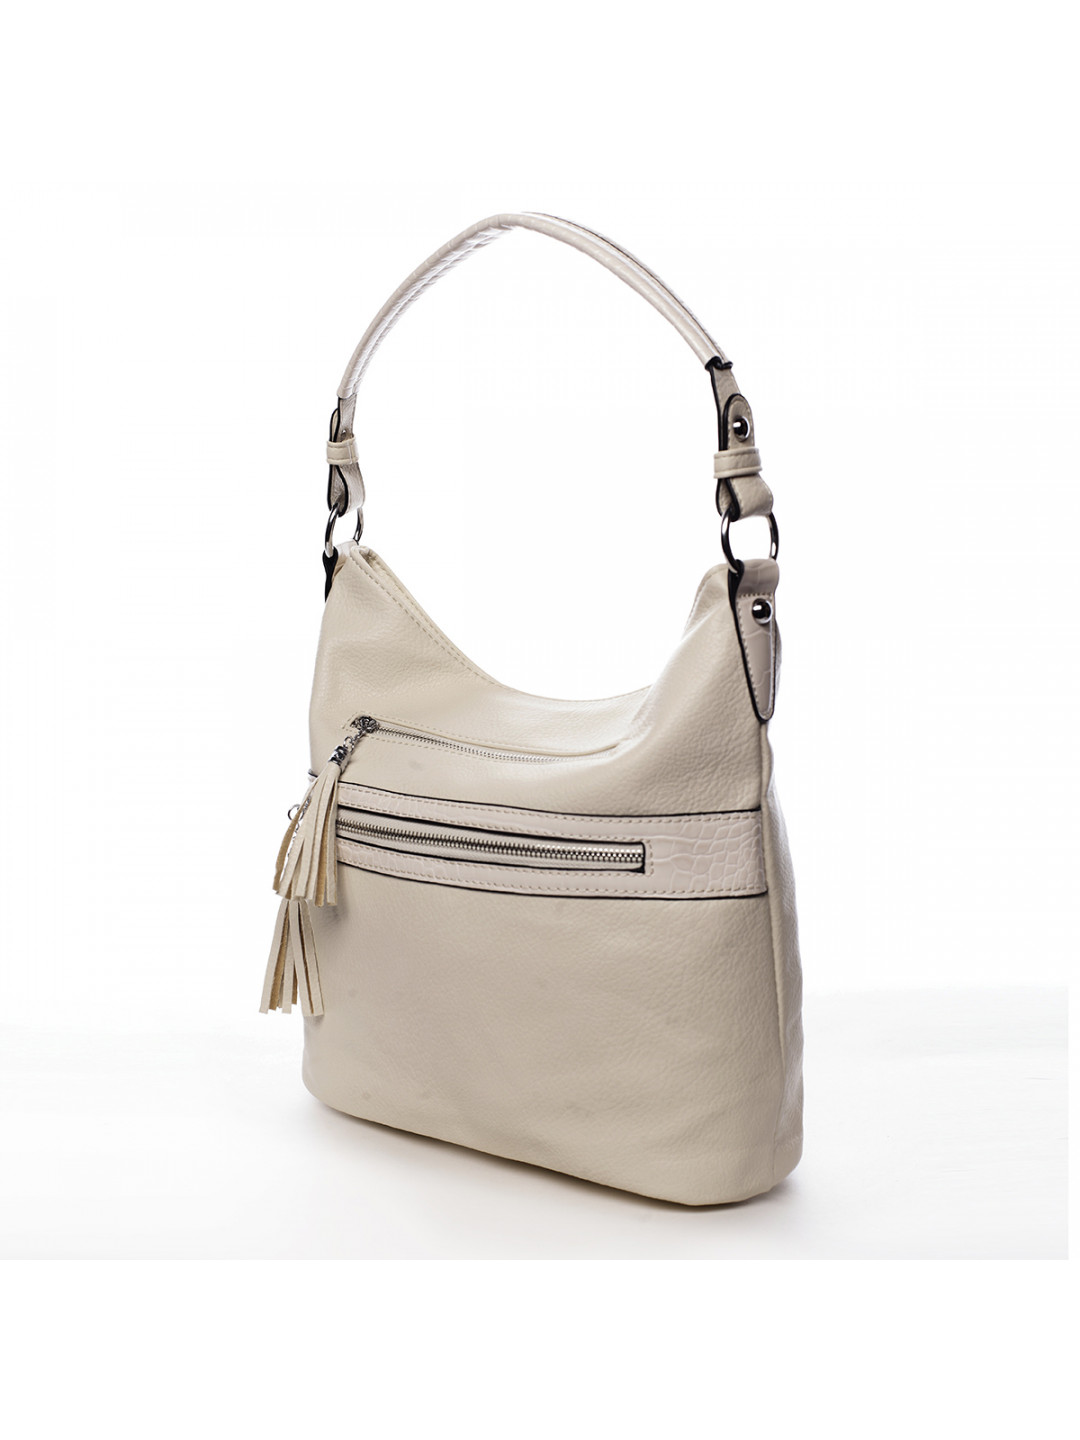 Dámská kabelka přes rameno béžová – Romina & Co Bags Becca